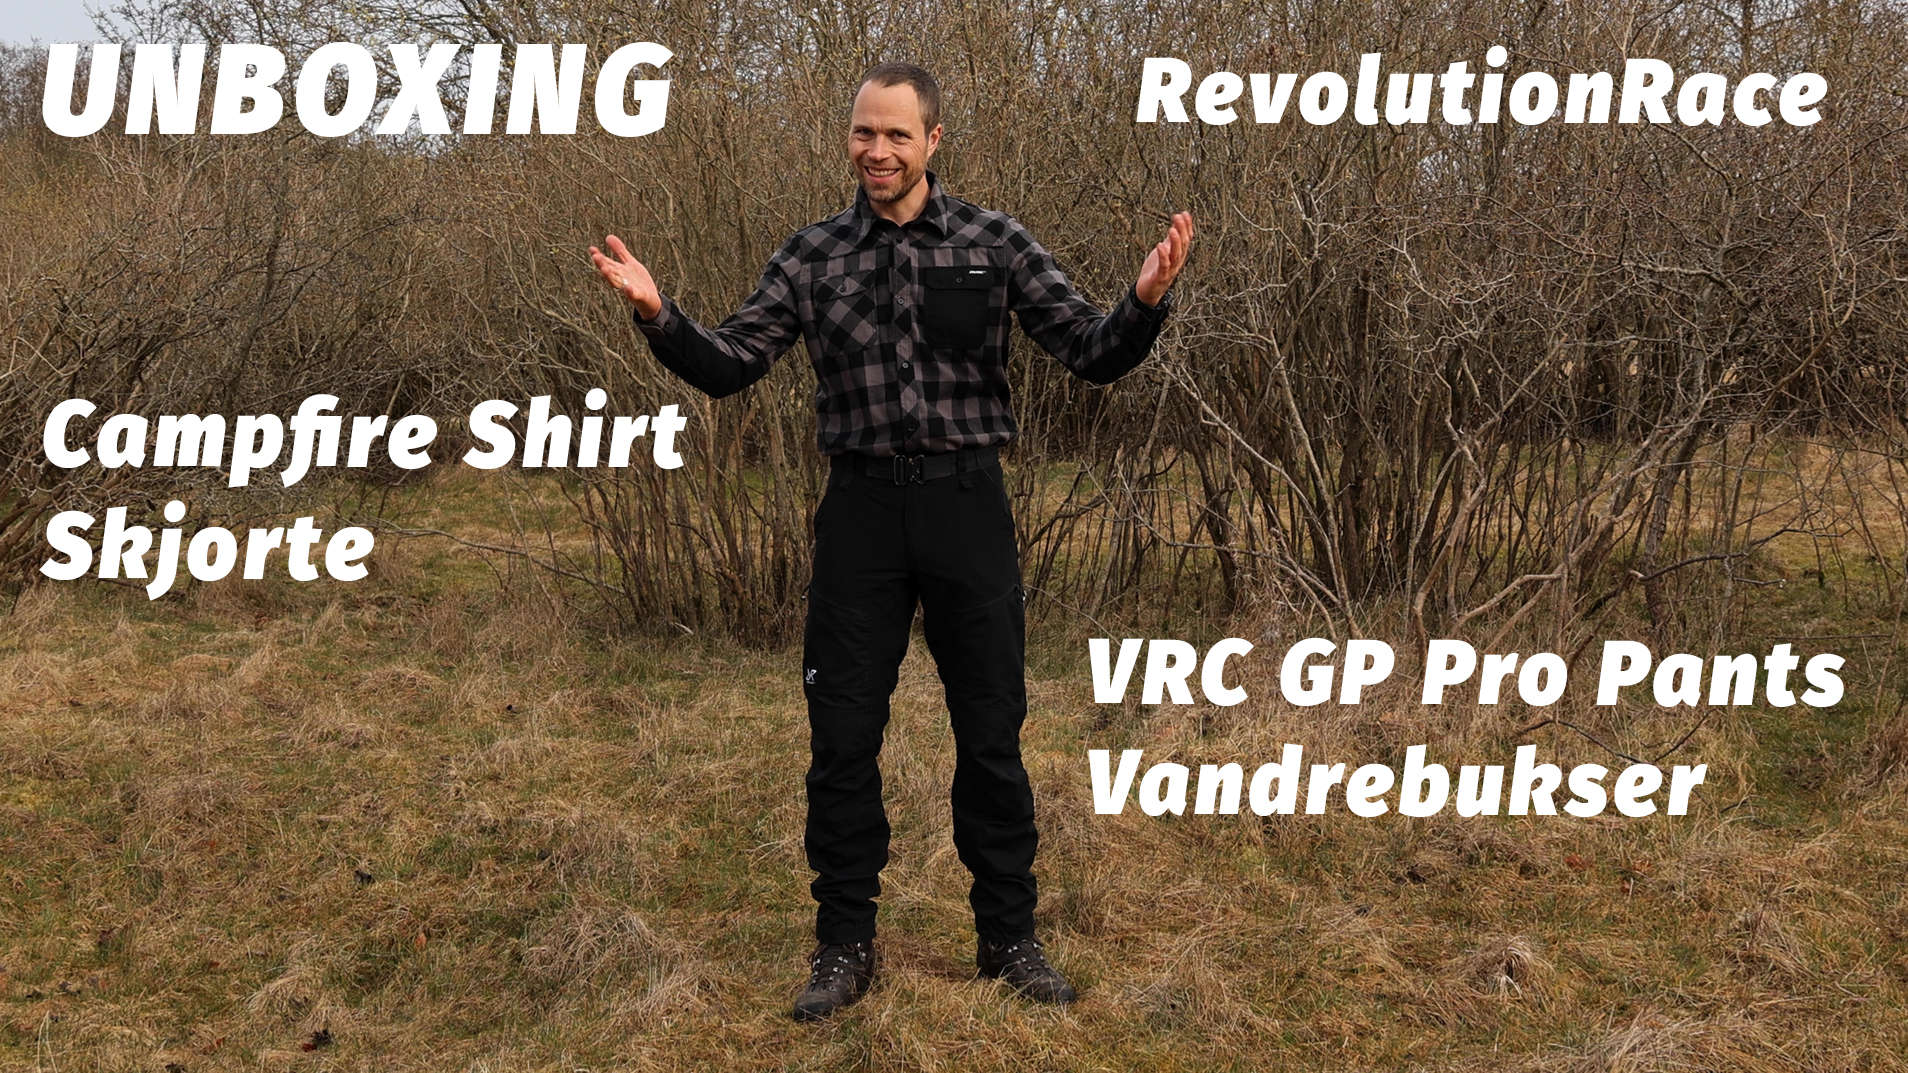 Revolutionrace, vandrebukser RVRC GP Pro Pants og skjorten Campfire Shirt [Unboxing] af Erik B. Jørgensen